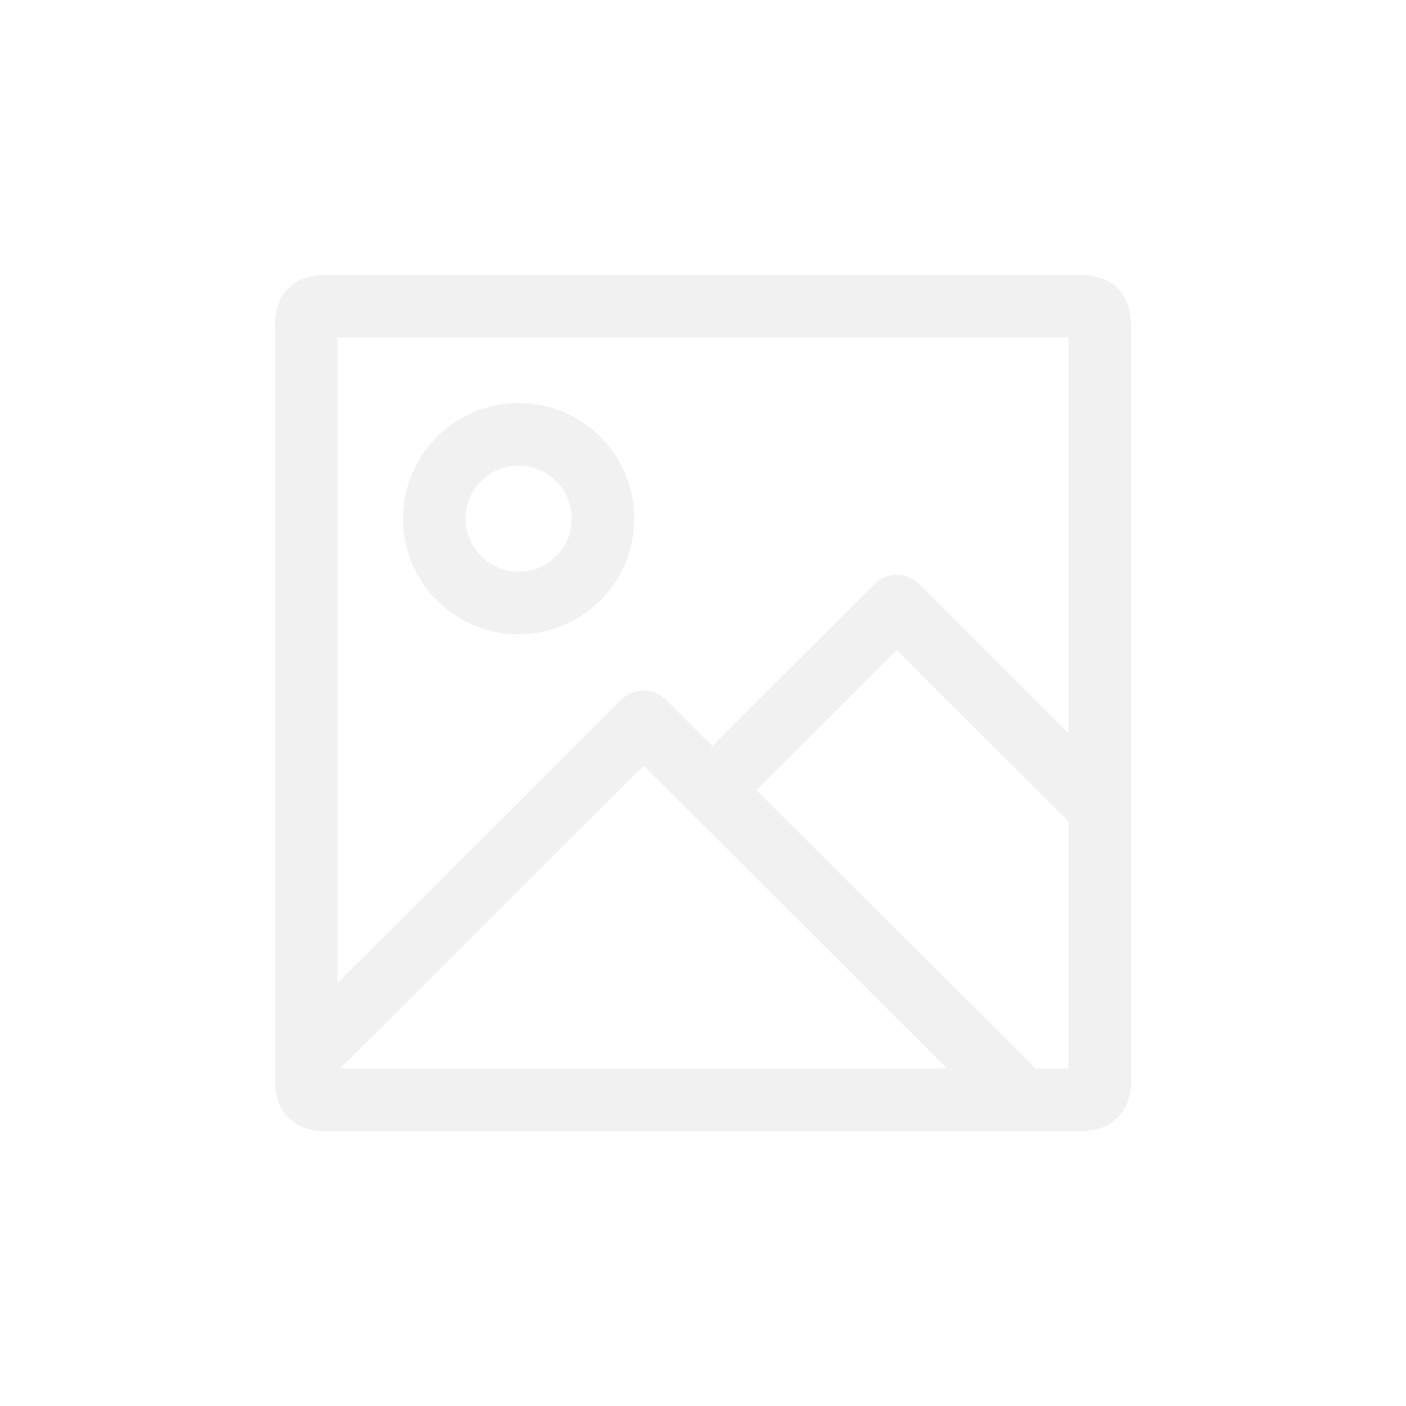 Чехол Deppa Air для Samsung Galaxy S8+ черный  (DEP-83306)